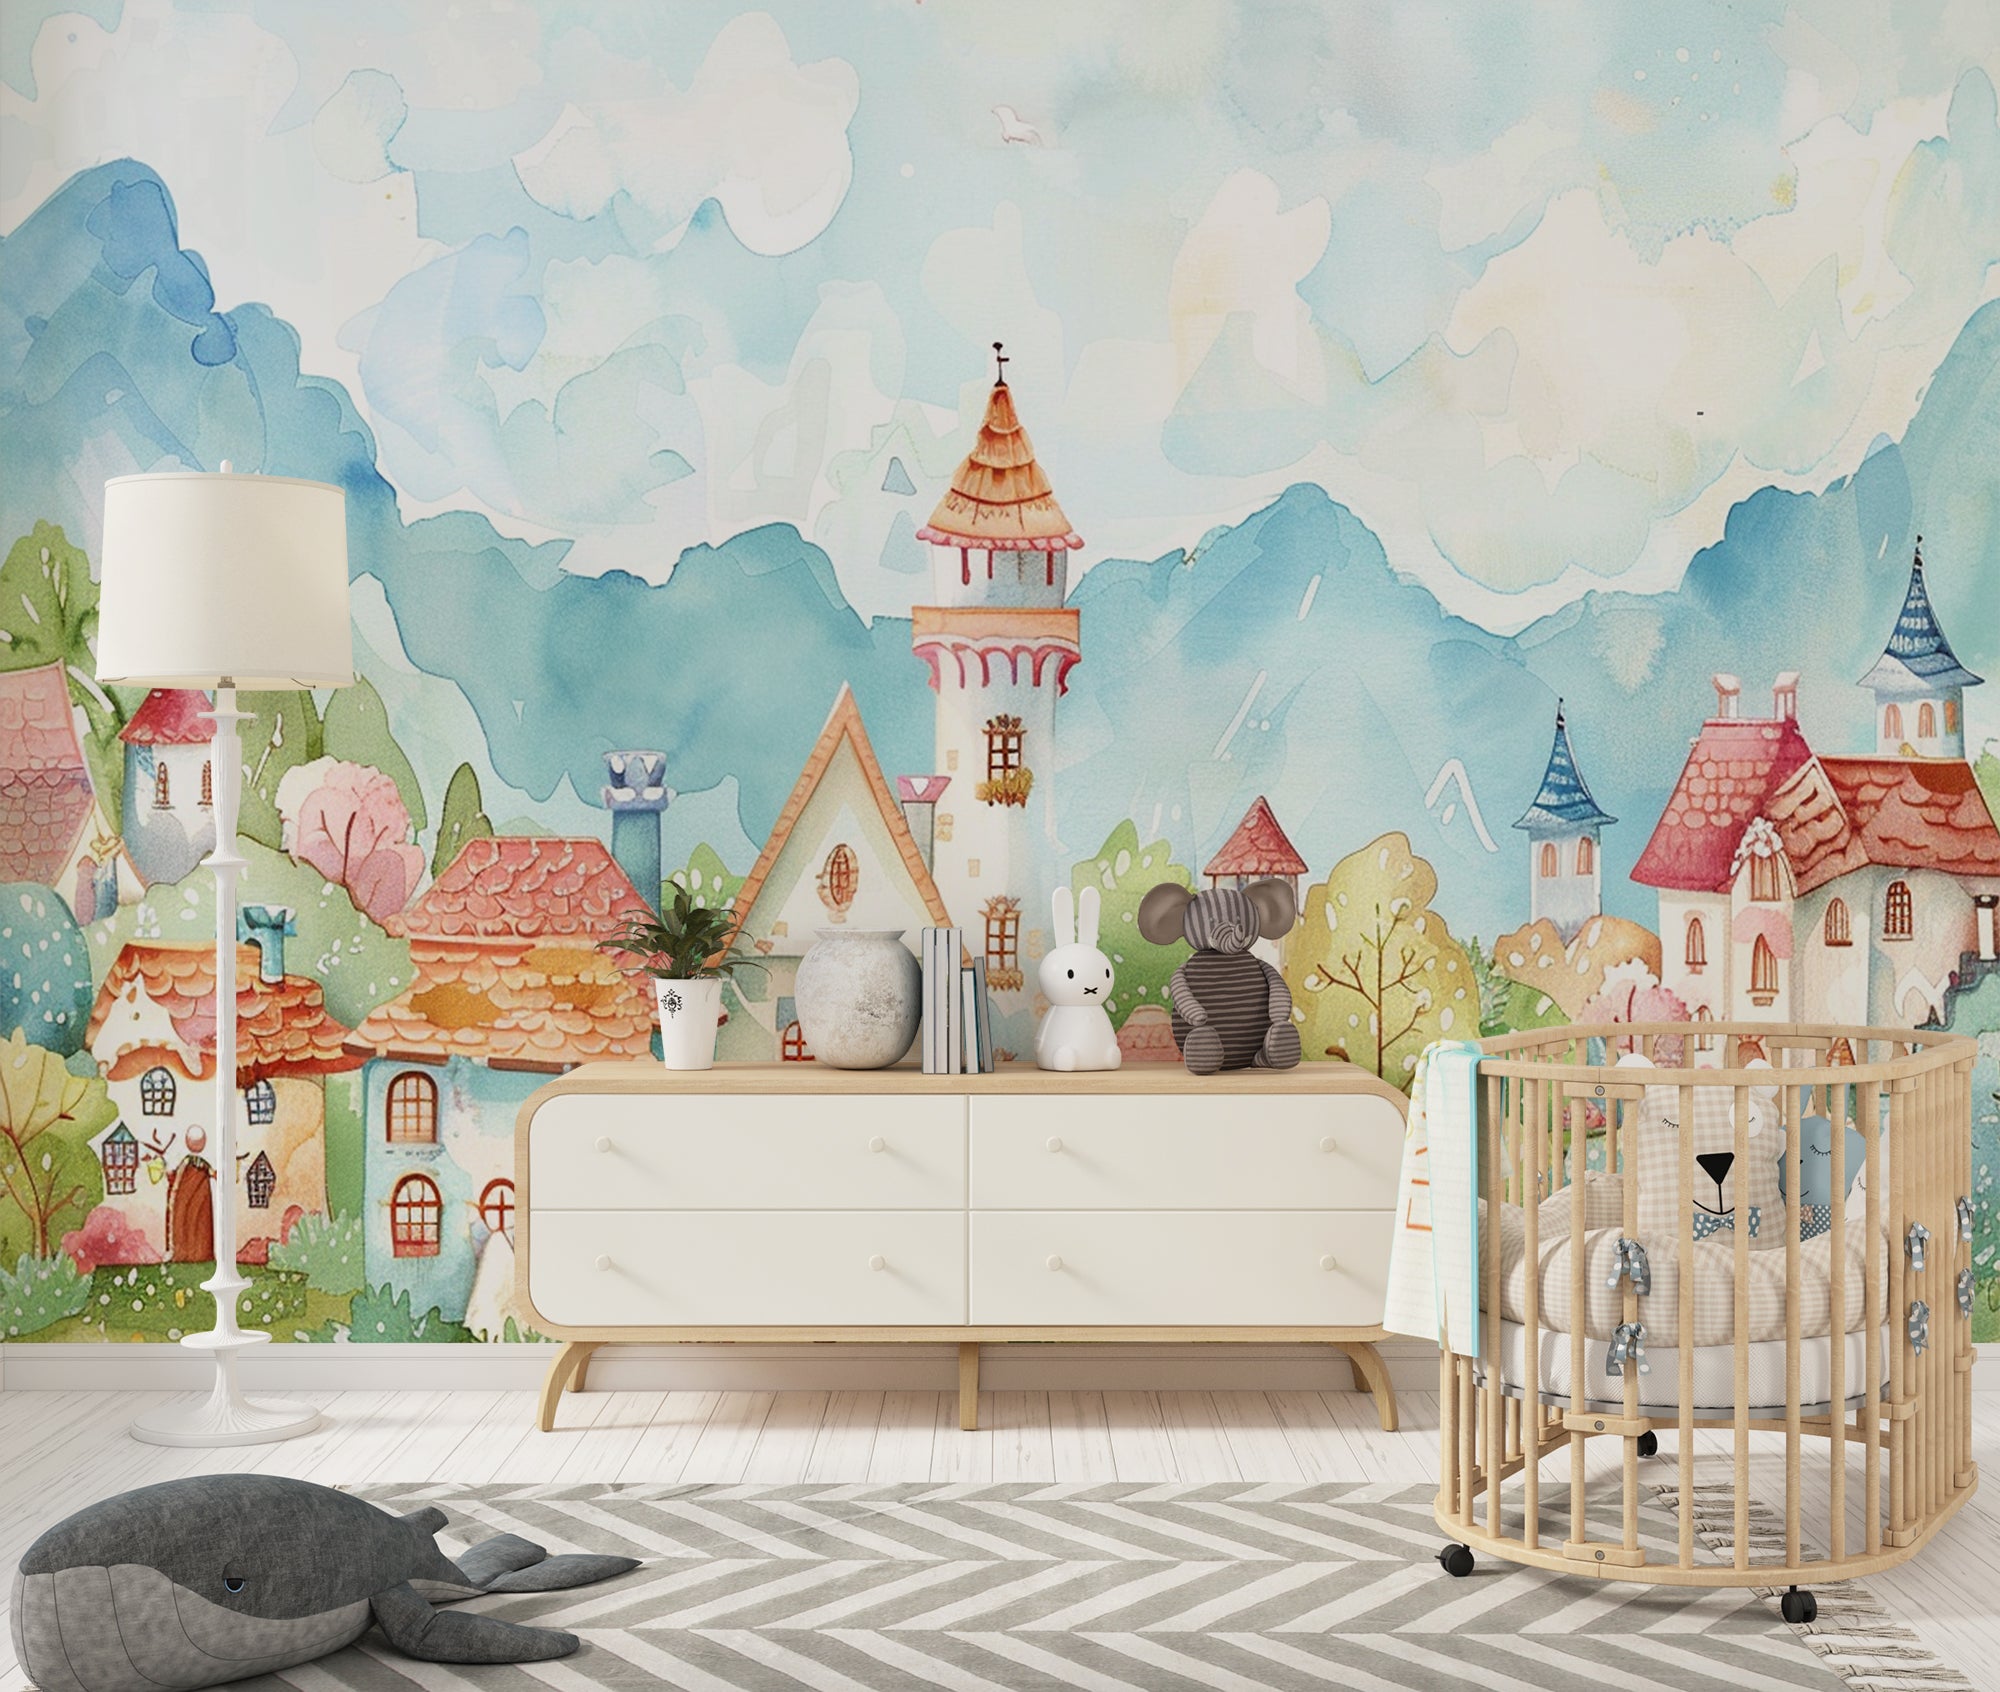 Imaginary Escape: Fantasy Village Wallpaper for Children